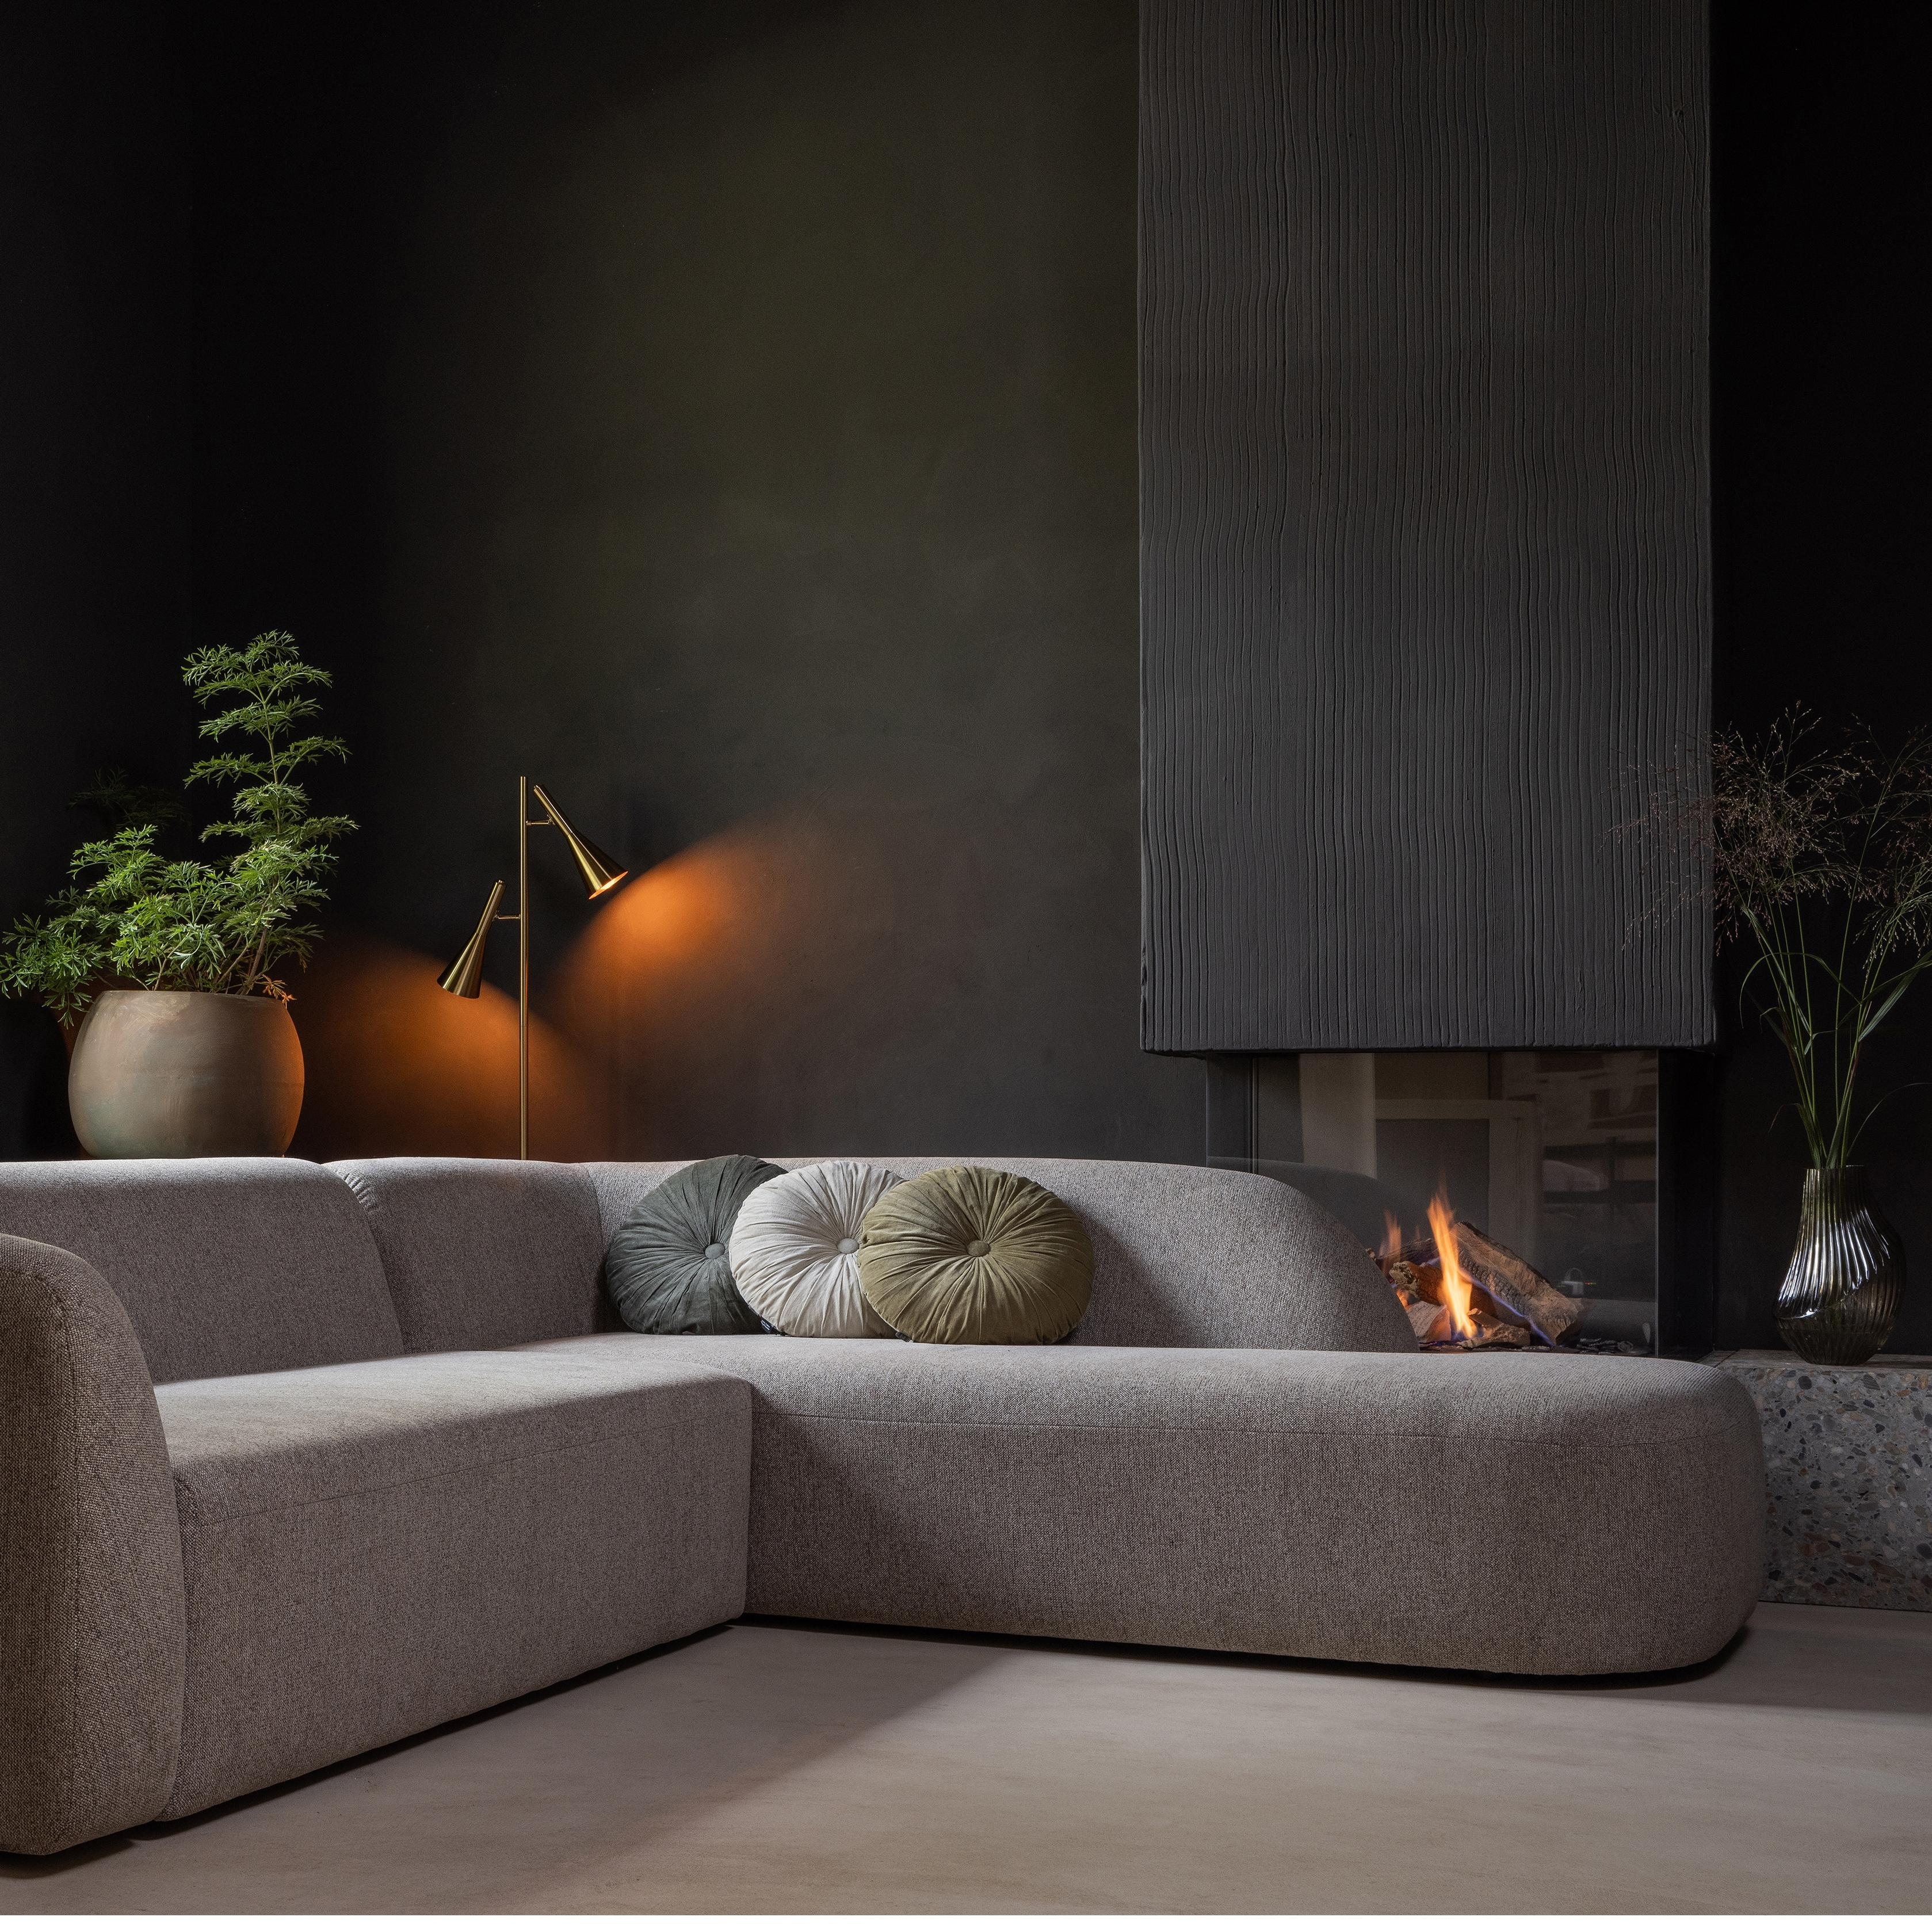 #couchliebt #sofa #wohnzimmer #couch #livingroom #couchstyle